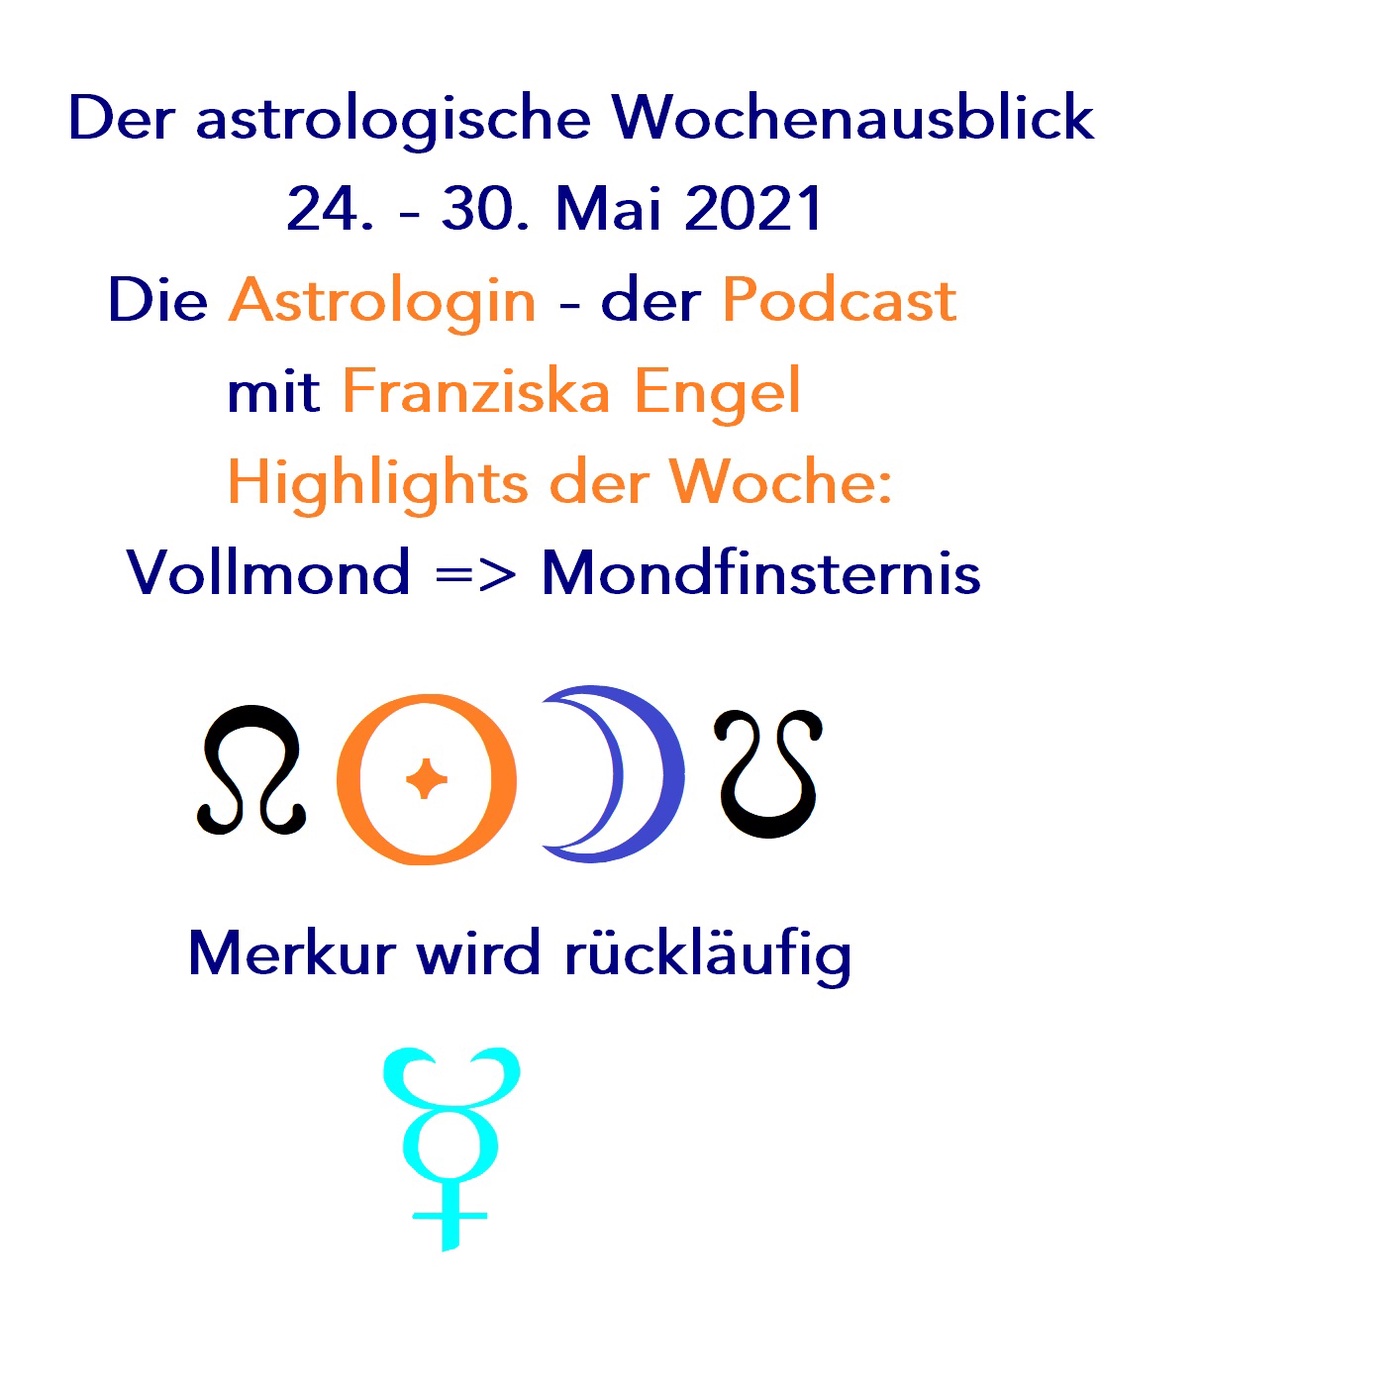 Mondfinsternis + Merkur wird rückläufig. Highlights im Astrologischen Wochenausblick 24.-30.05.2021